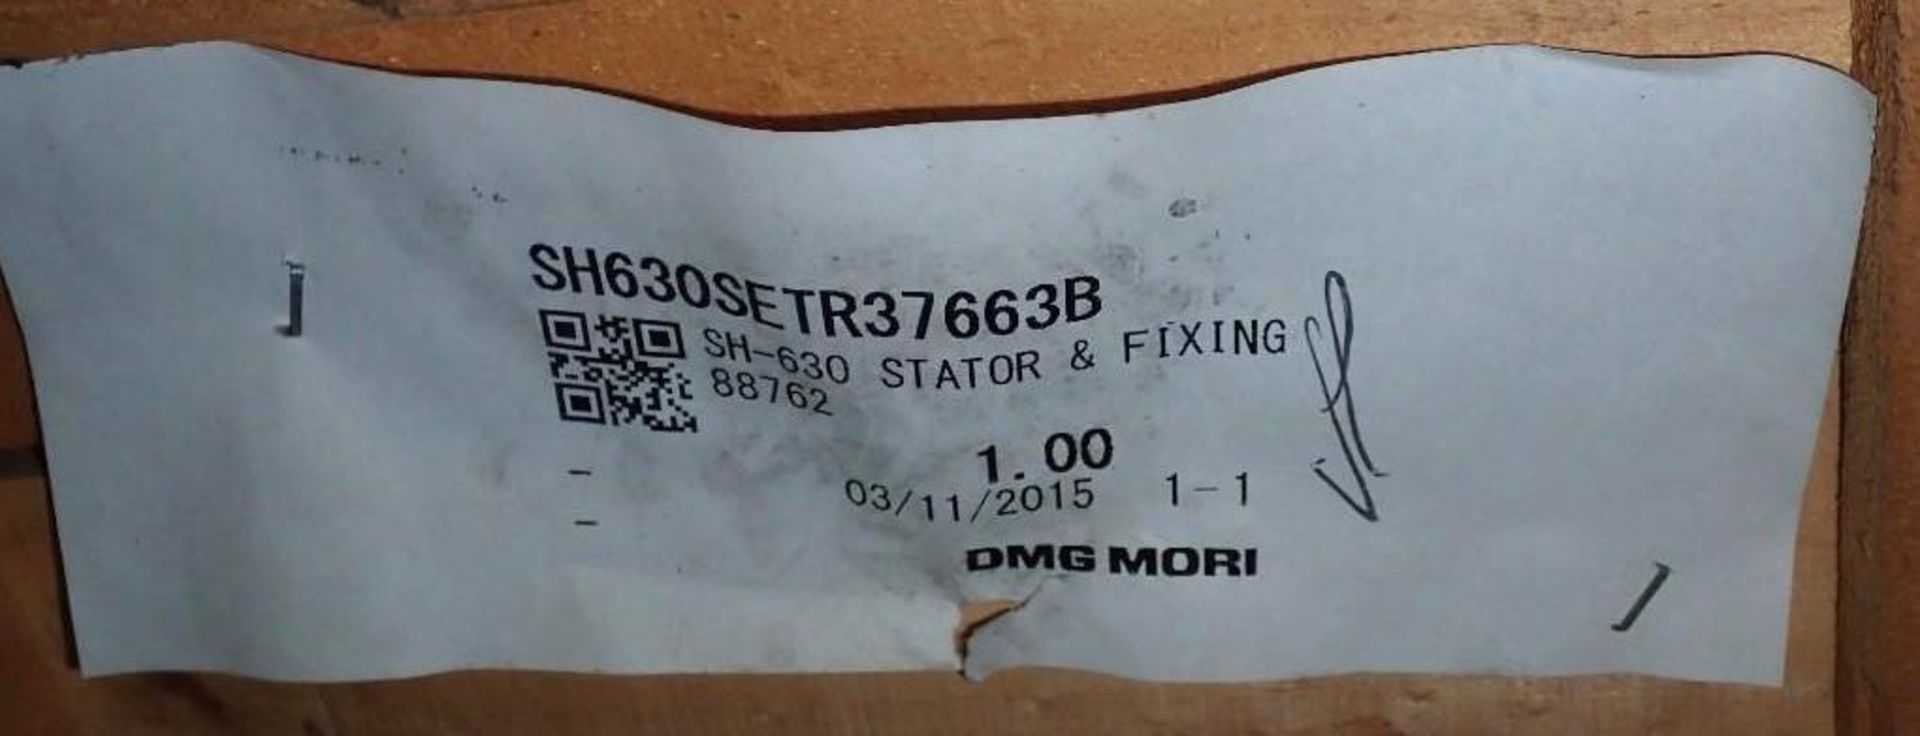 Mori Seiki #SH-600 Stator & Fixing - Image 5 of 5